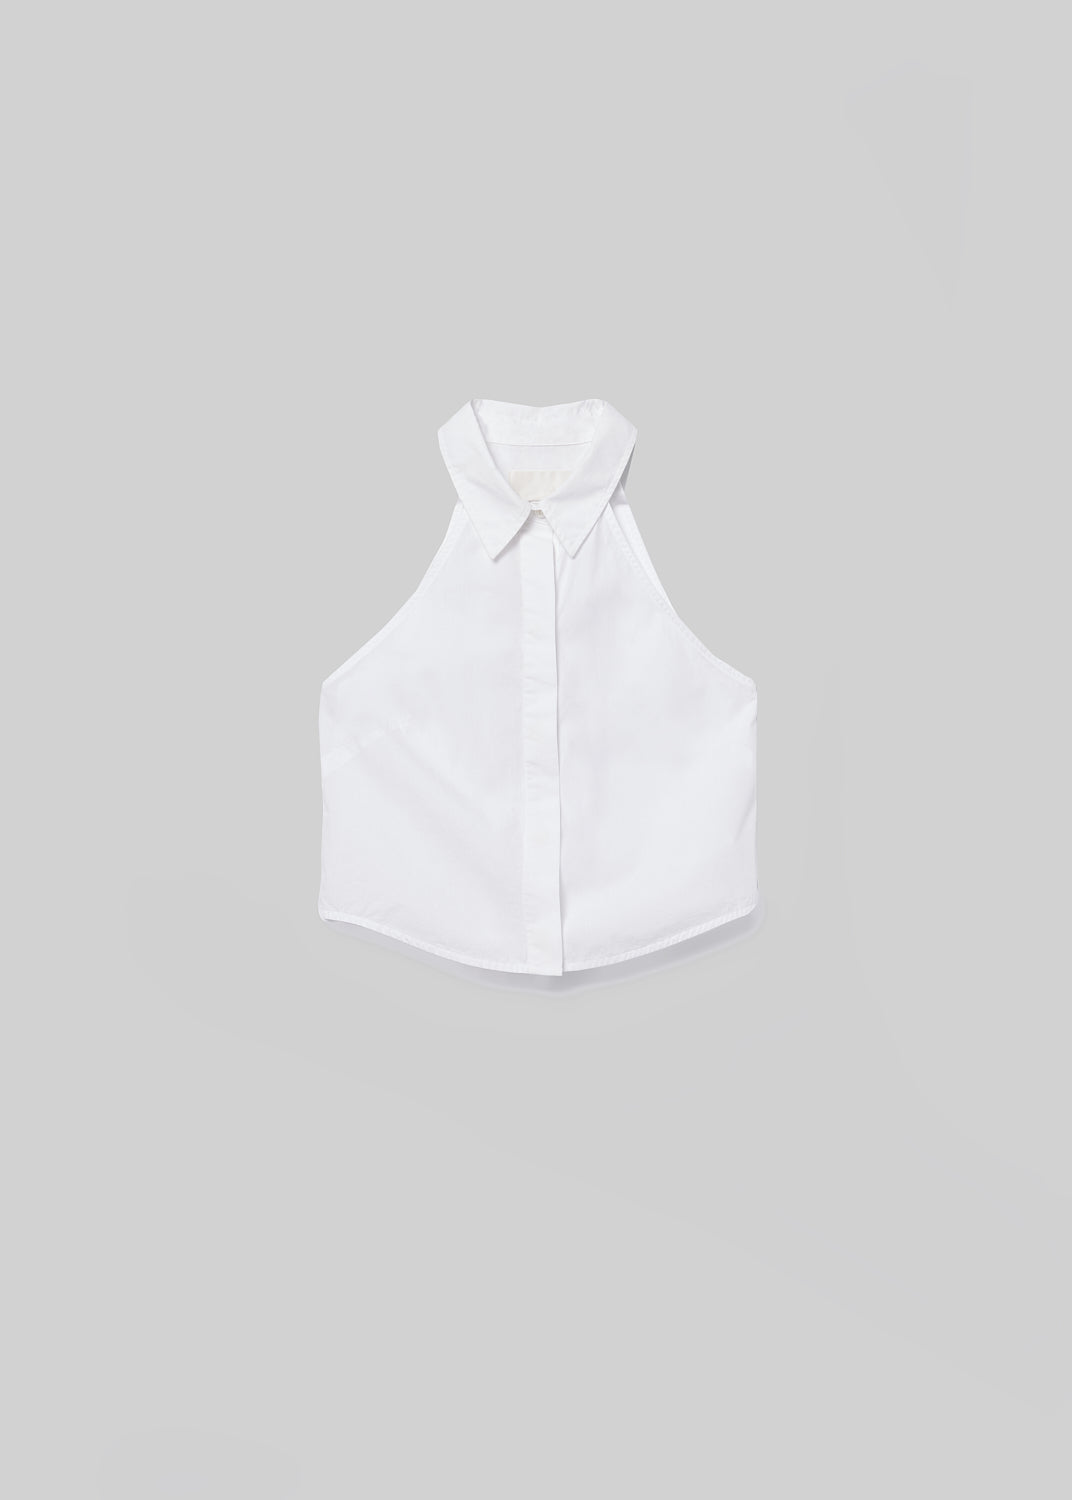 Adeline Sleeveless Shirt in Optic White